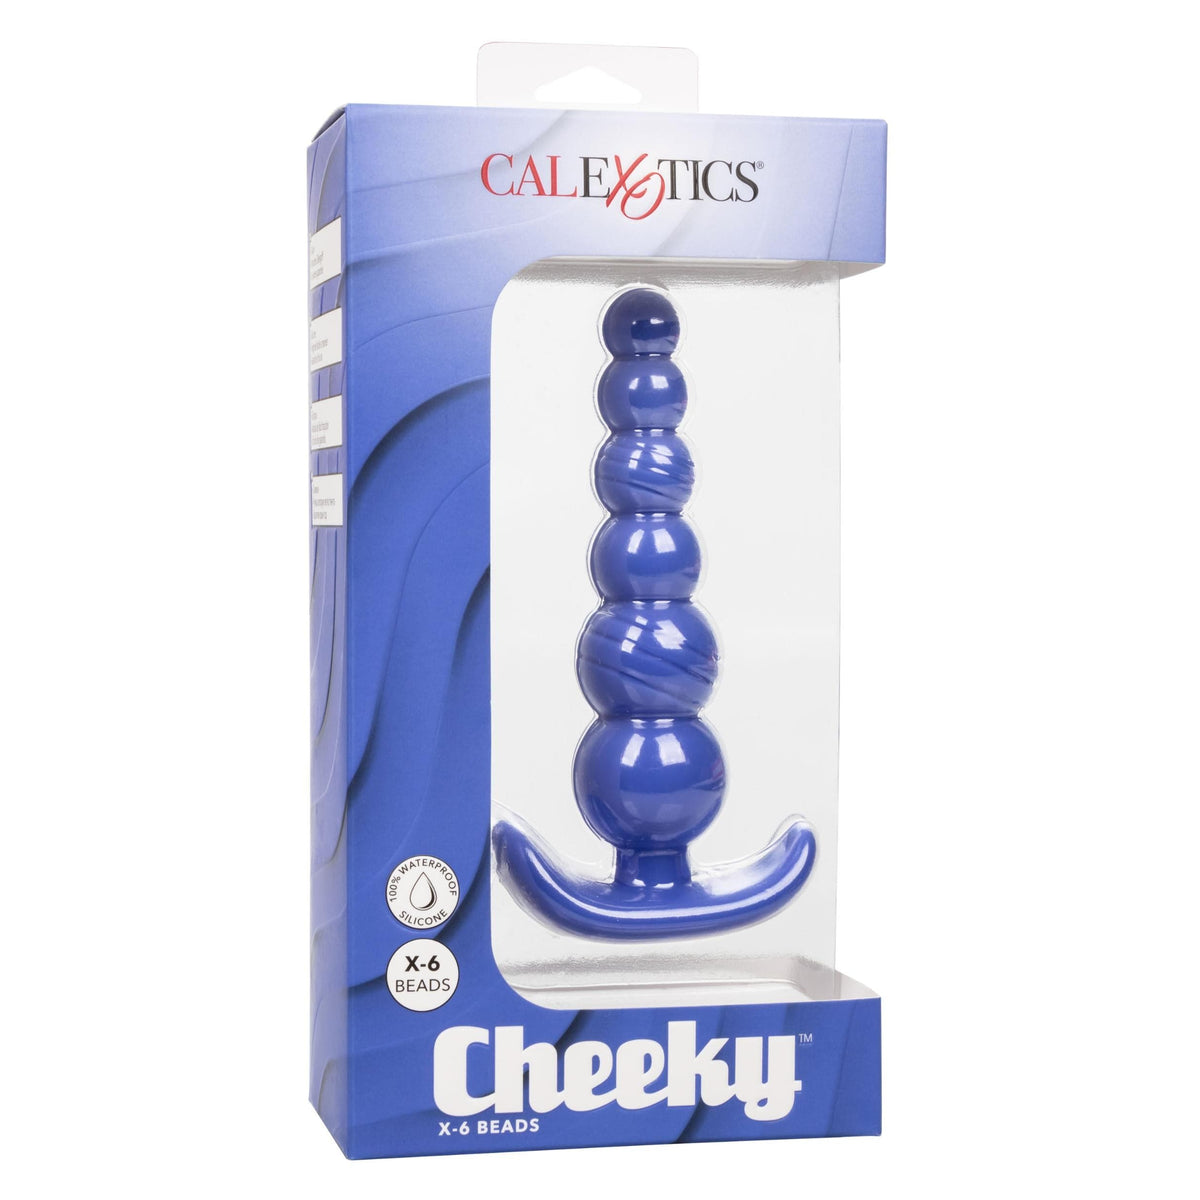 cheeky x 6 beads